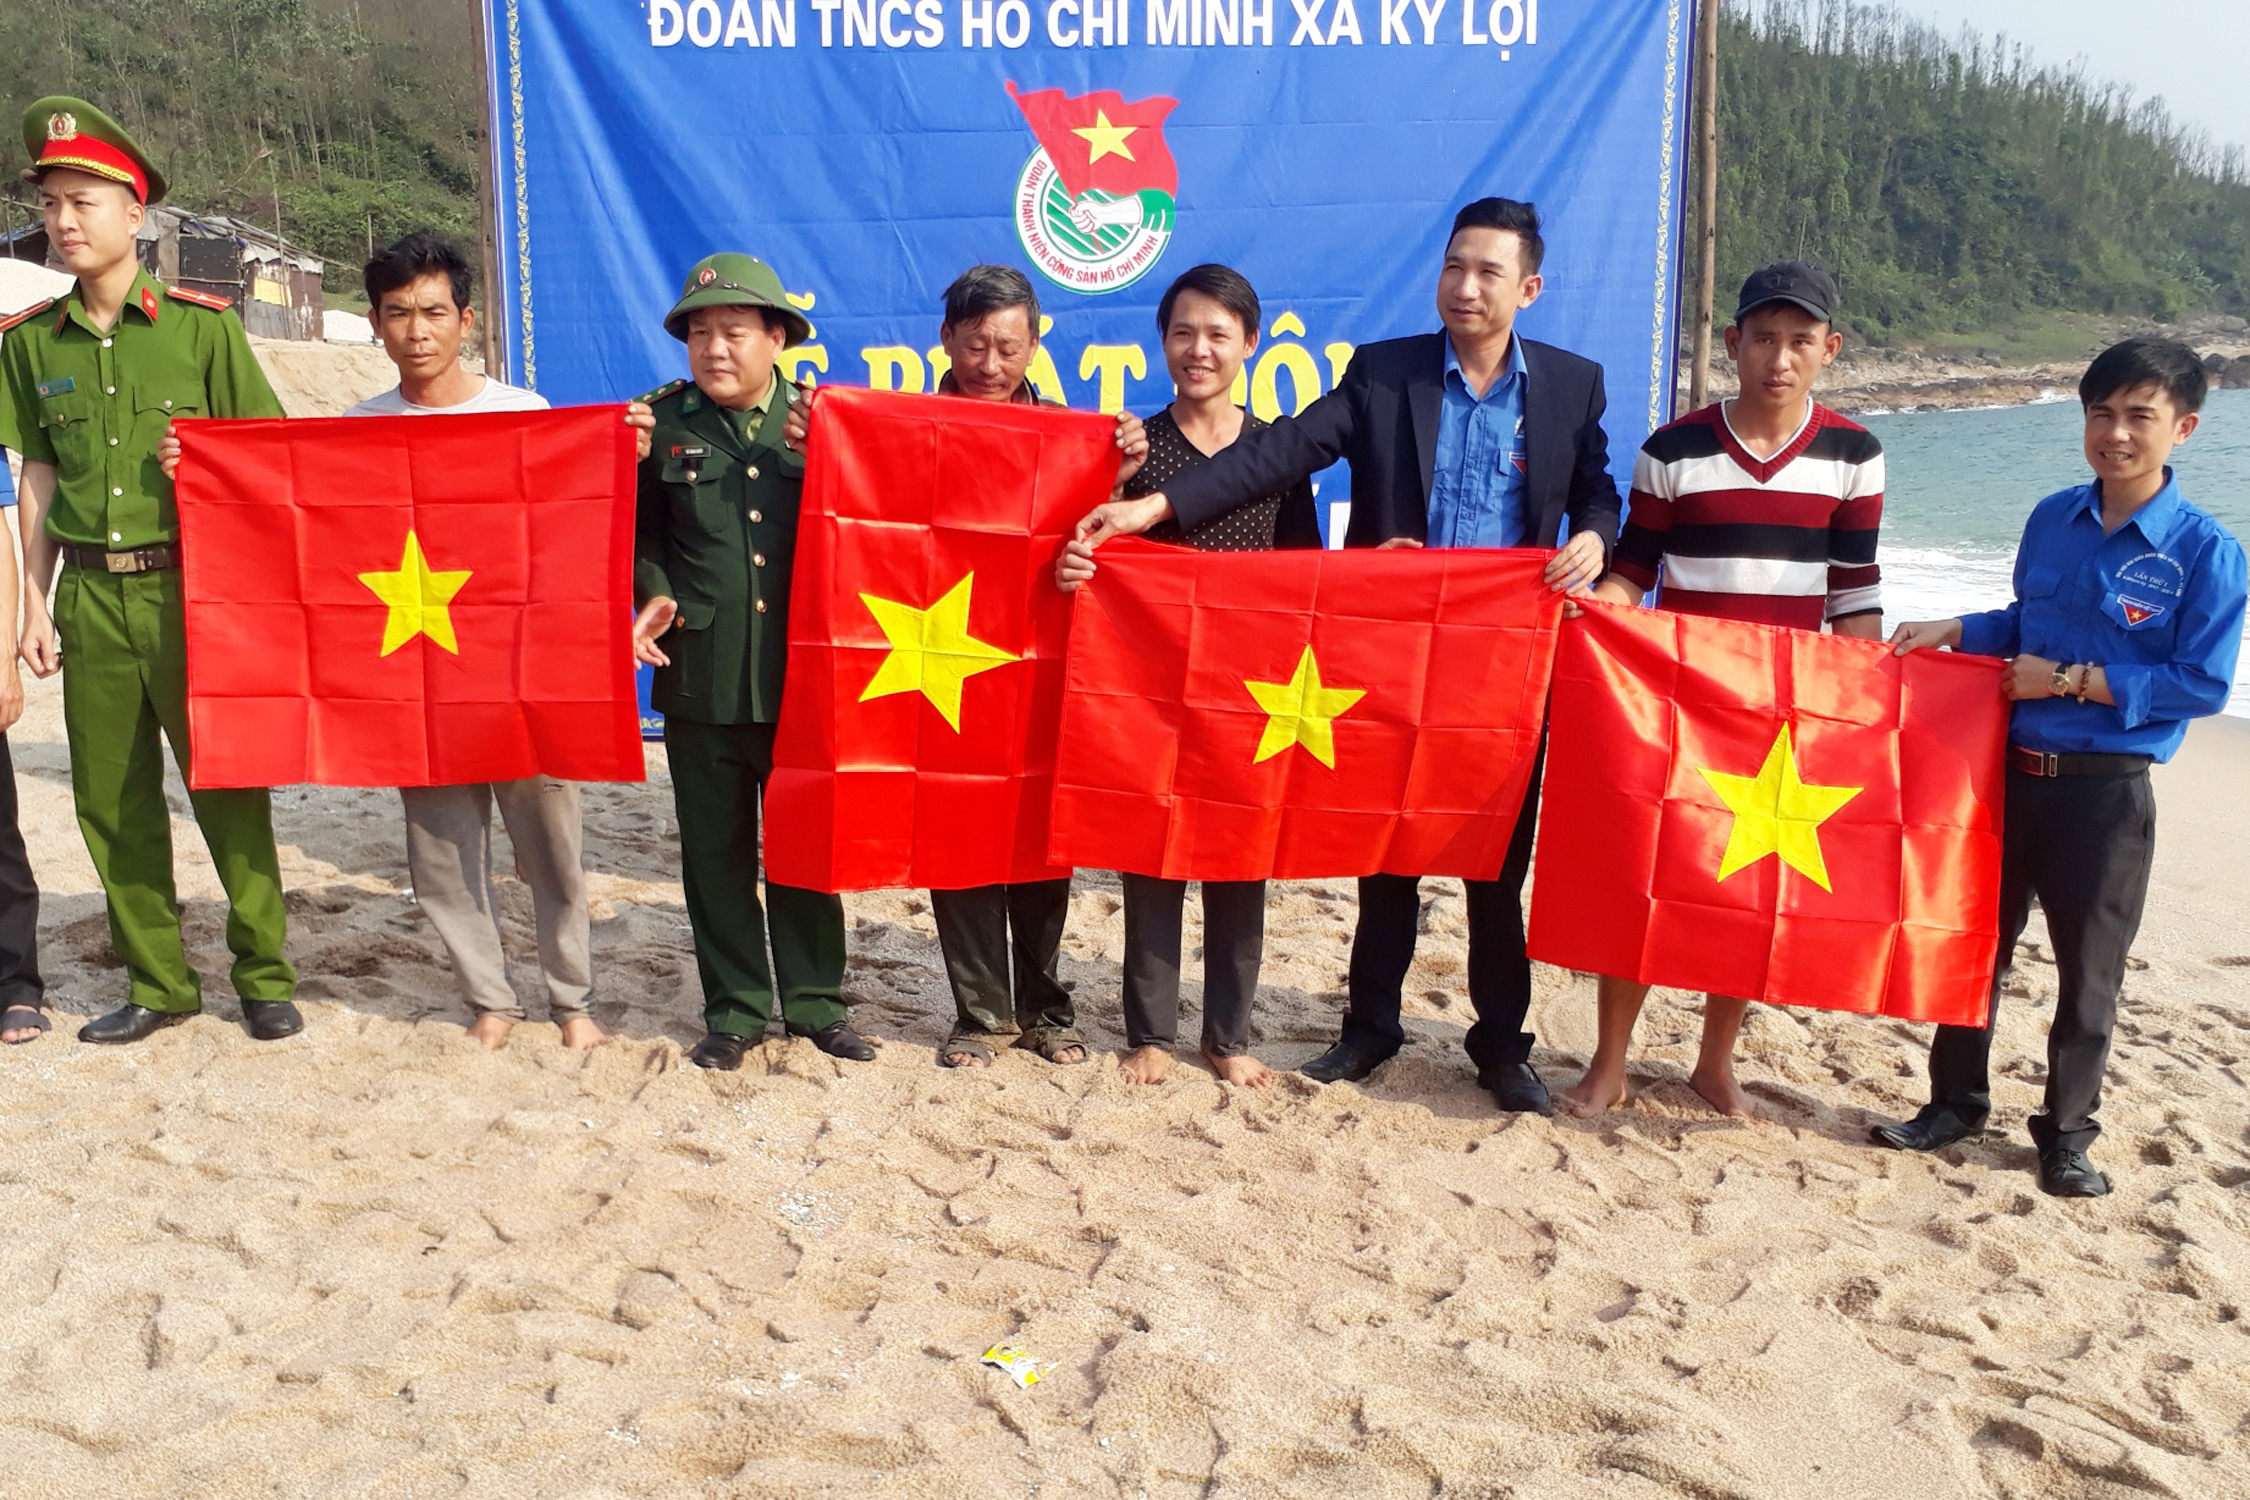 Đoàn xã Kỳ Lợi tổ chức nhiều hoạt động ý nghĩa động viên ĐVTN và ngư dân bám biển (Bí thư đoàn xã Chu Thanh Hội người đứng ngoài cùng bìa phải)